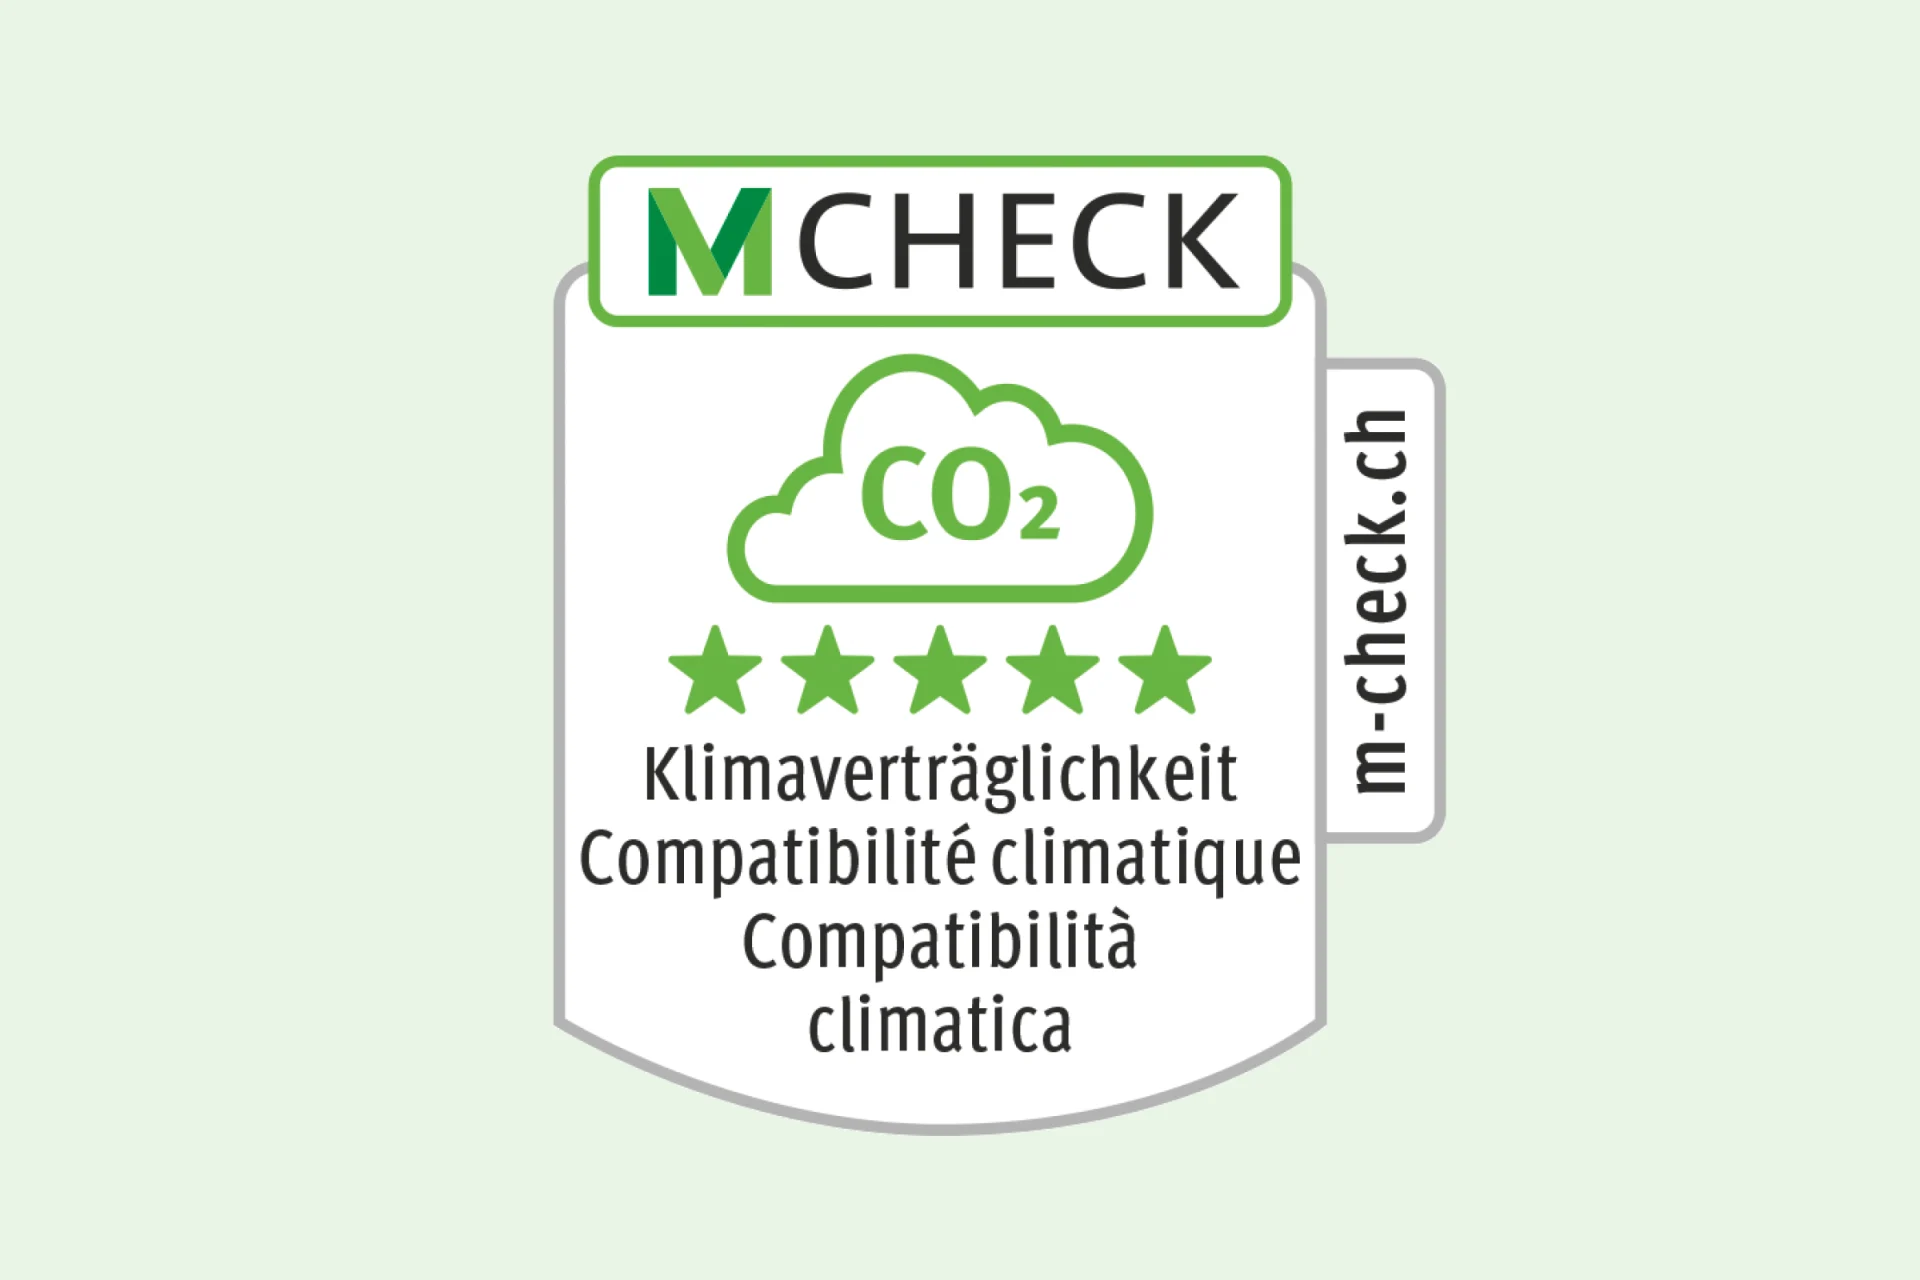 Label M-Check pour la compatibilité climatique avec 5 étoiles vertes.